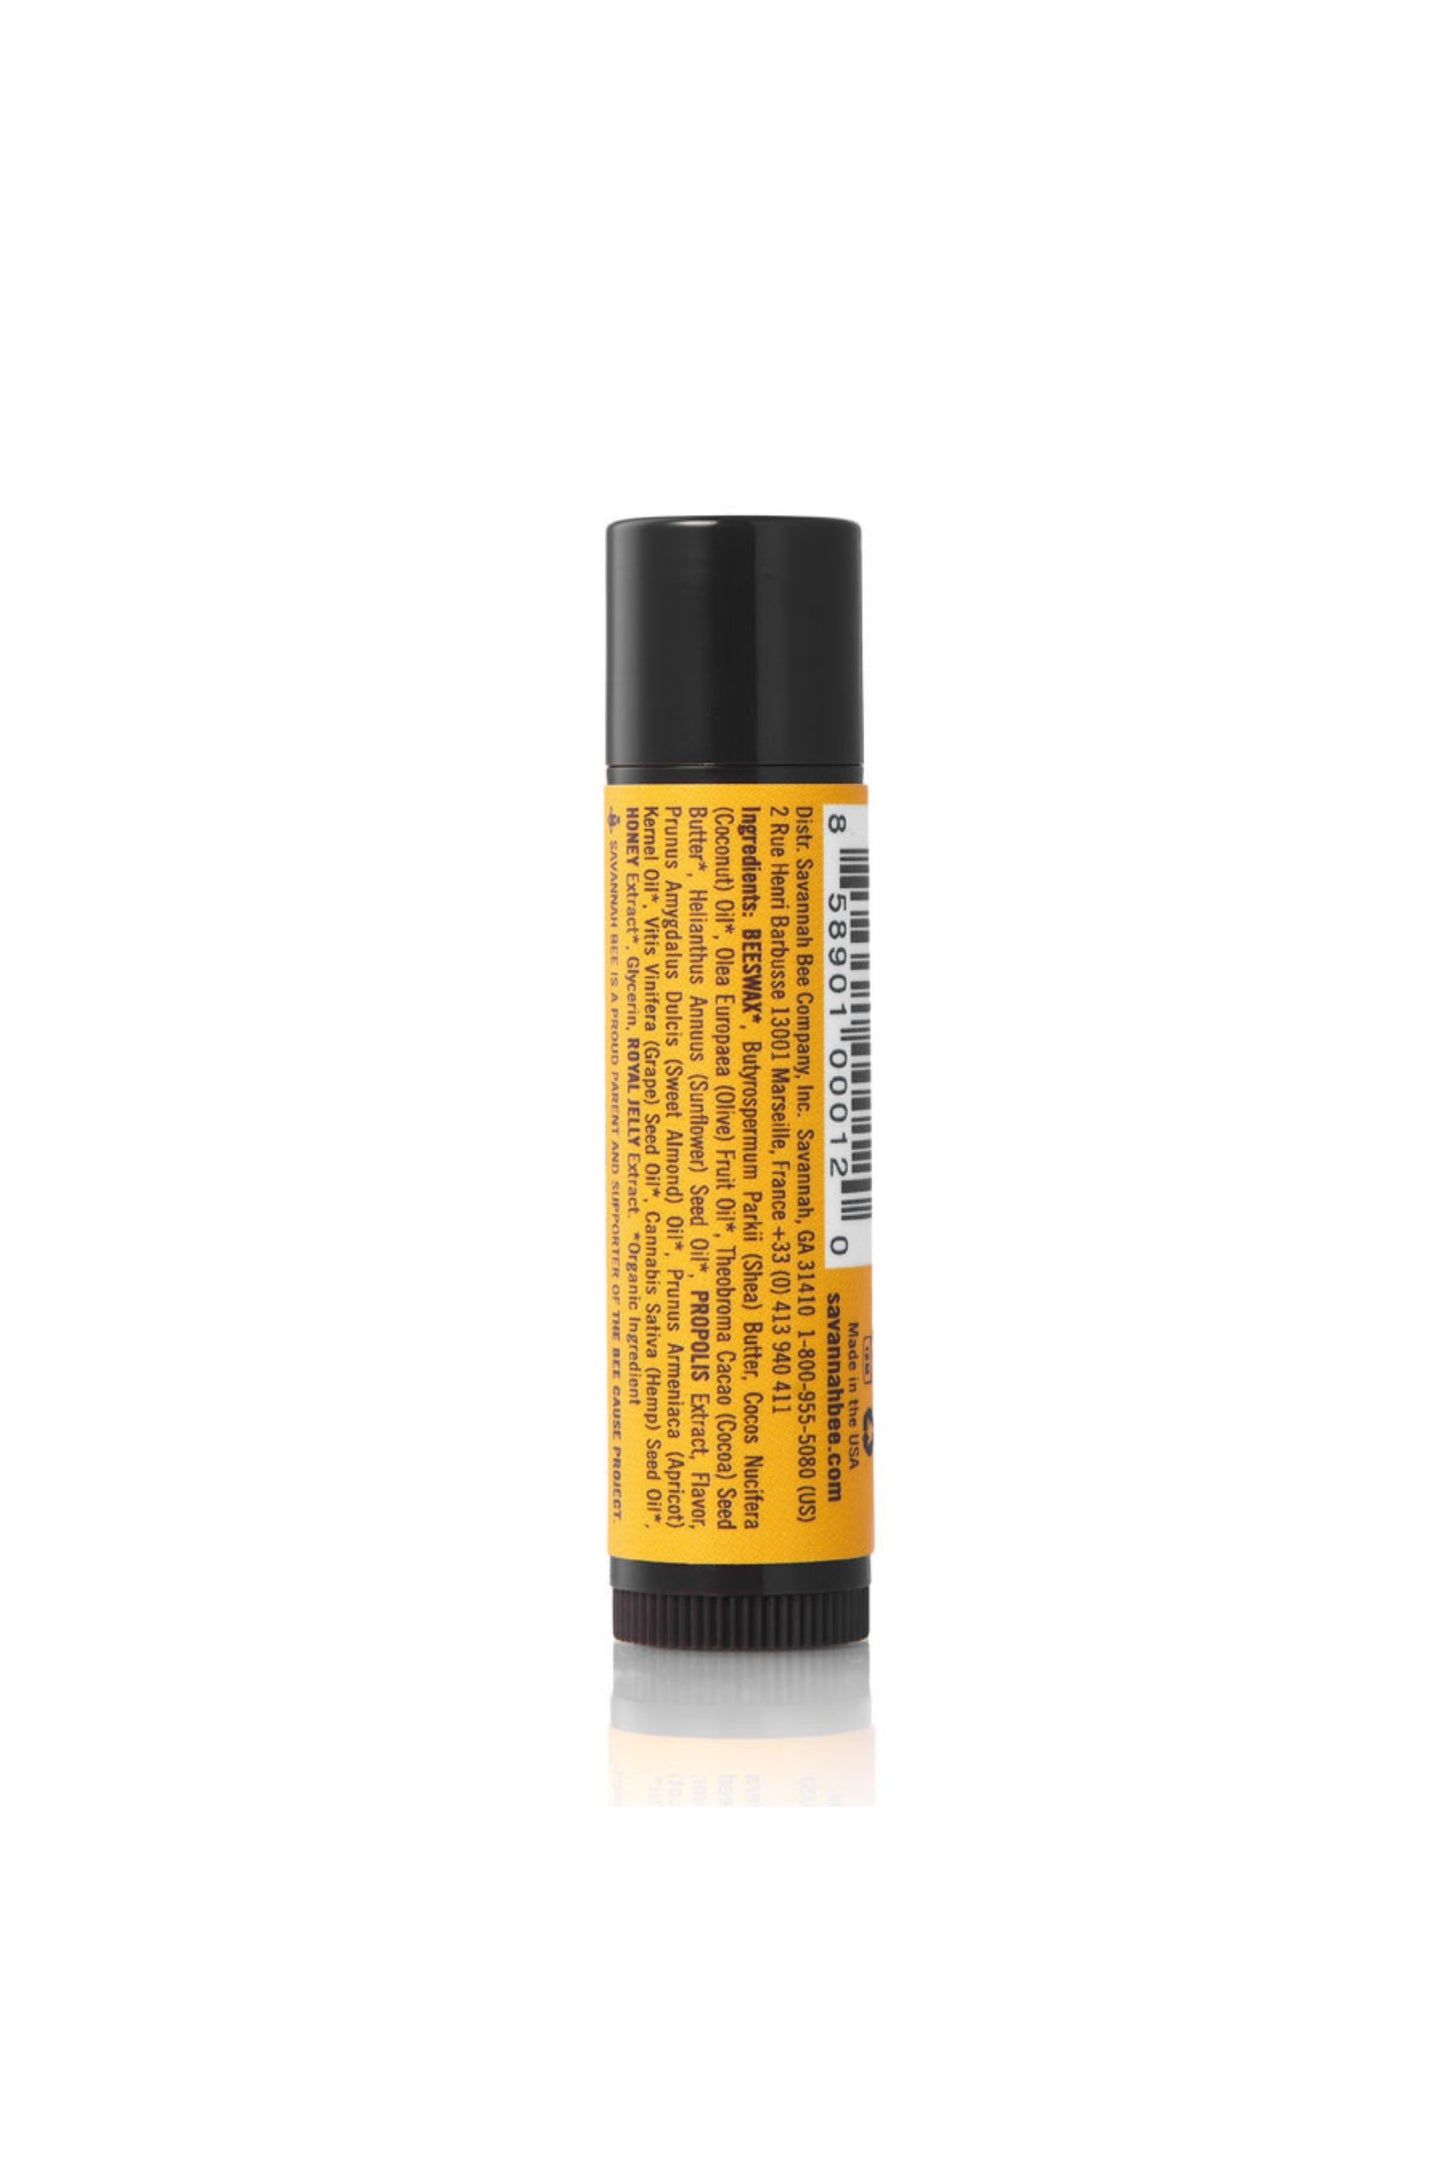 Savannah Bee Company Tupelo Honey Beeswax & Propolis Lip golden yellow lipstick tube.